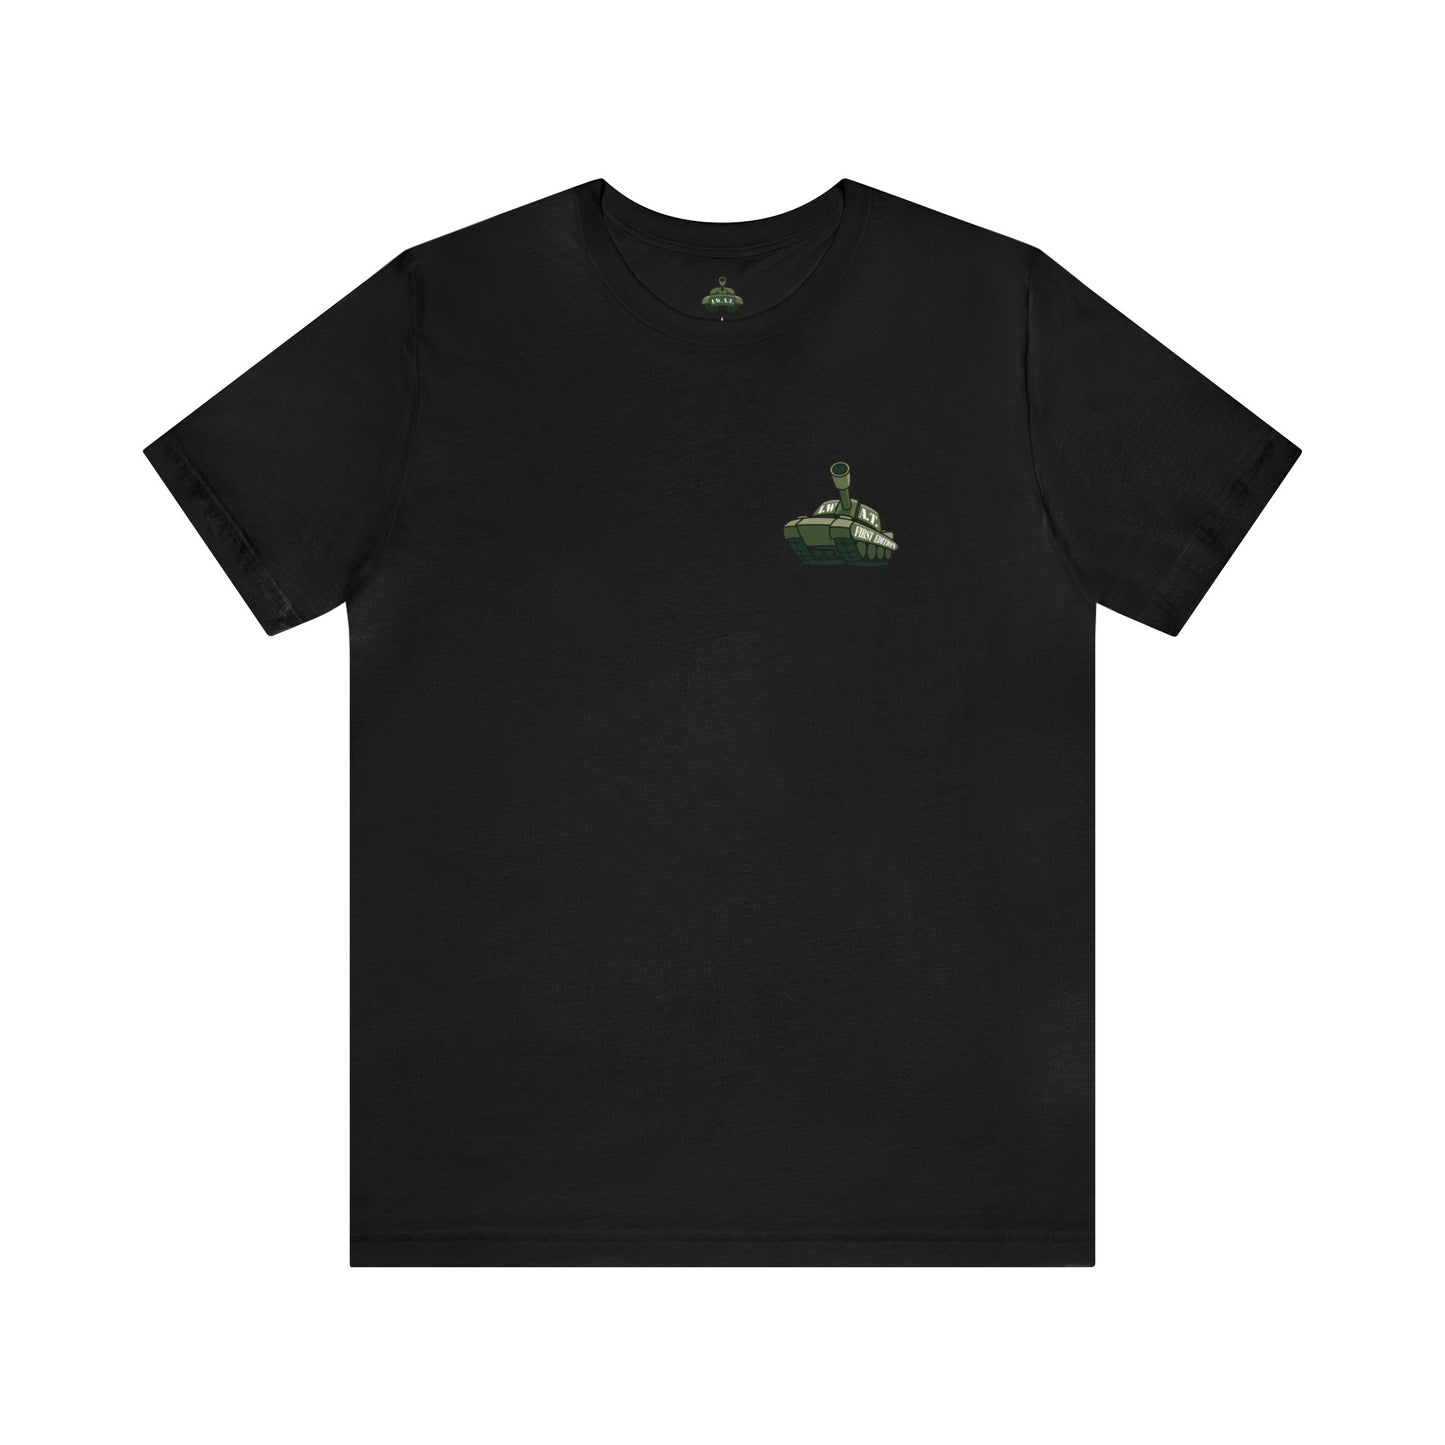 First Edition Short Sleeve T-Shirt